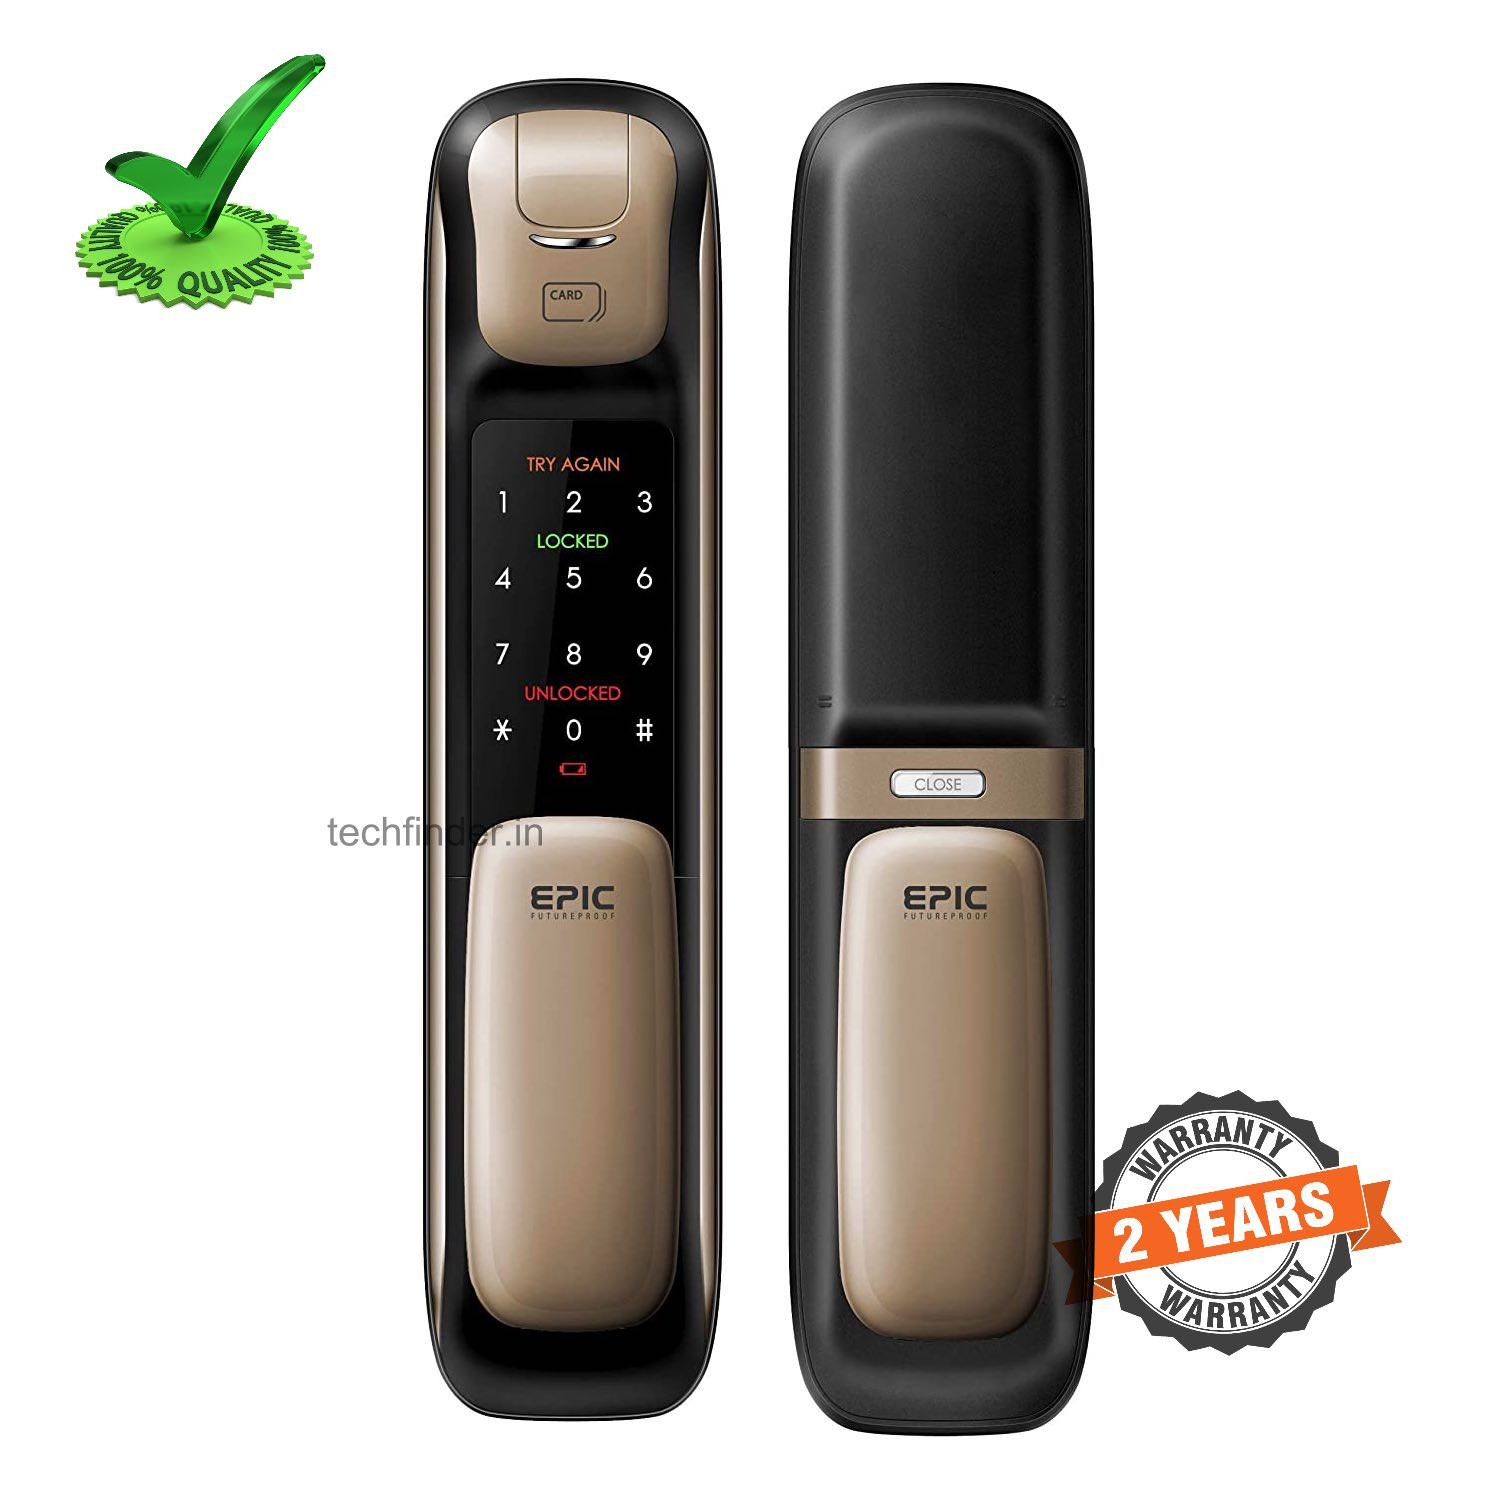 Epic ES-P9100FK 5way to Open Finger Print Digital Smart Door Lock